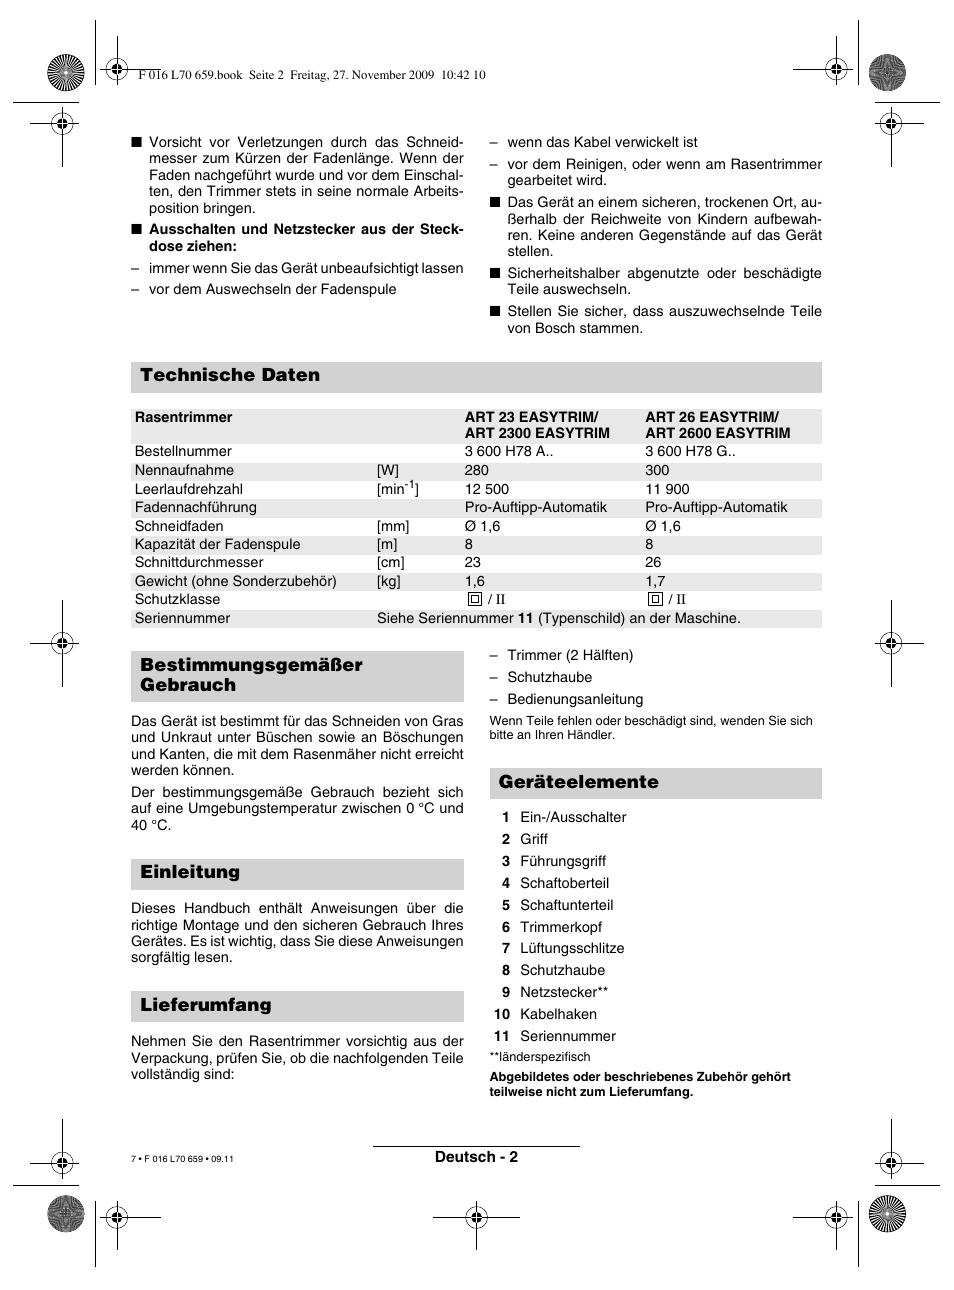 Technische Daten Bosch Art 23 Easytrim User Manual Page 7